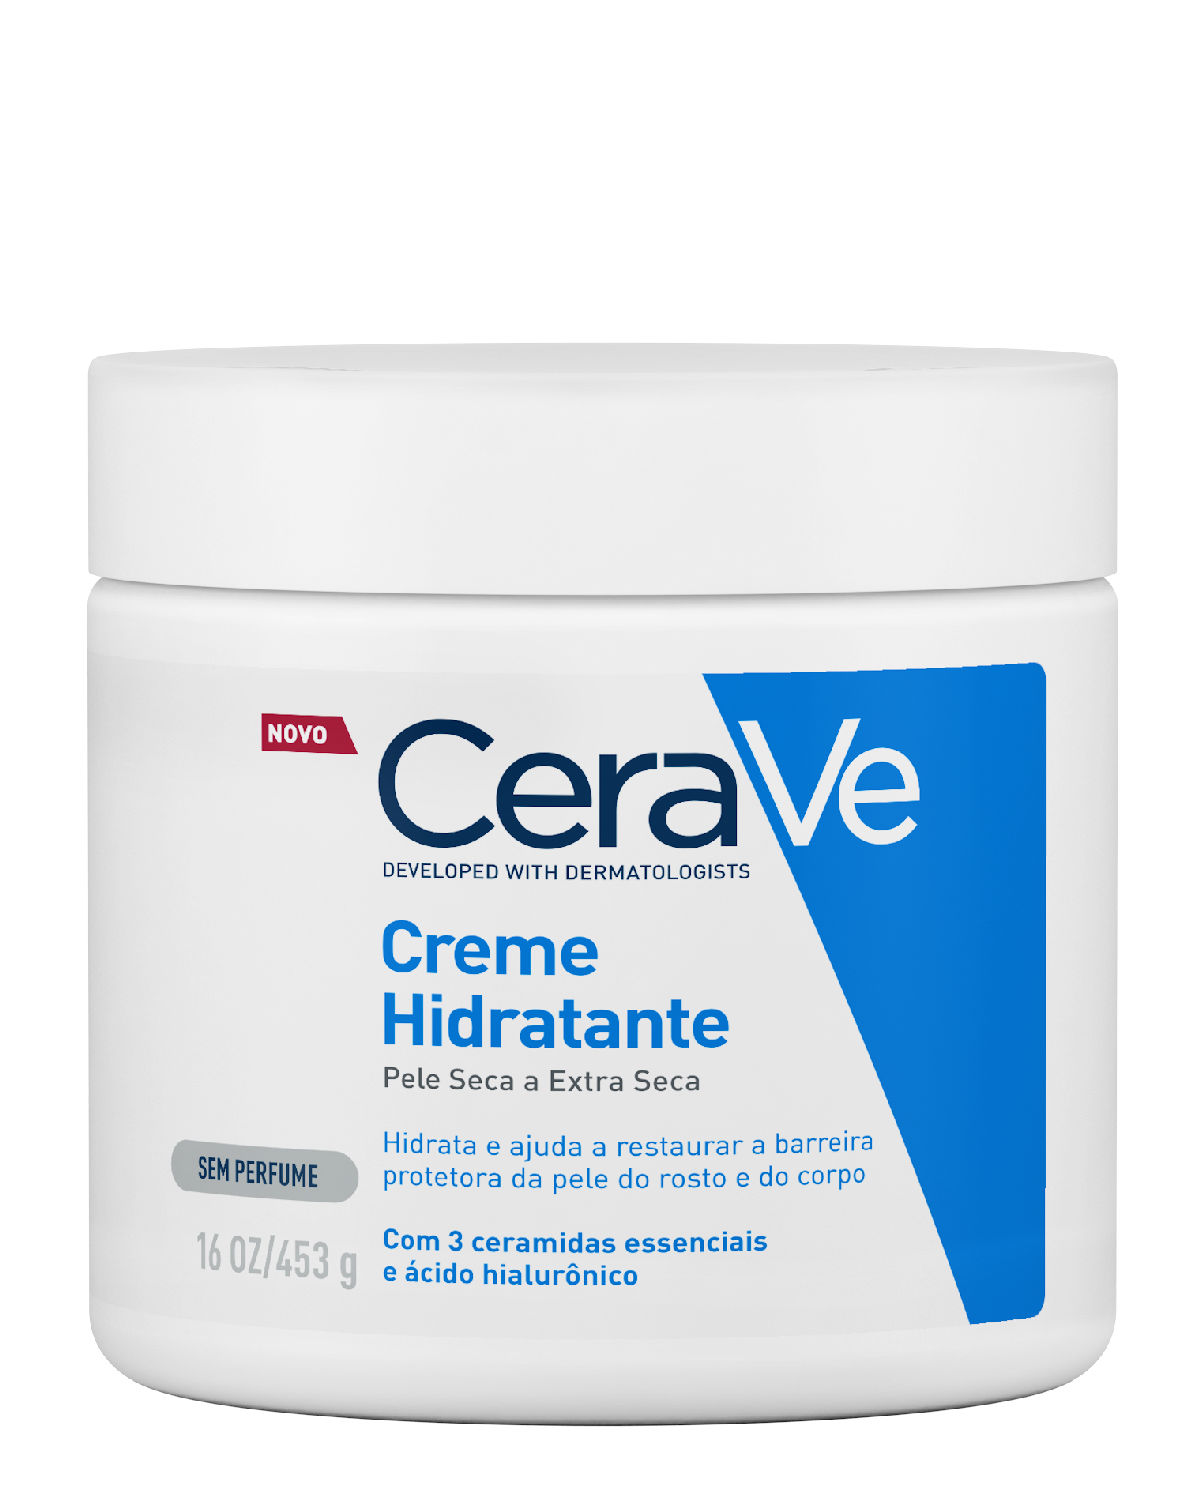 Cerave Creme Hidratante para pele seca ou extra seca